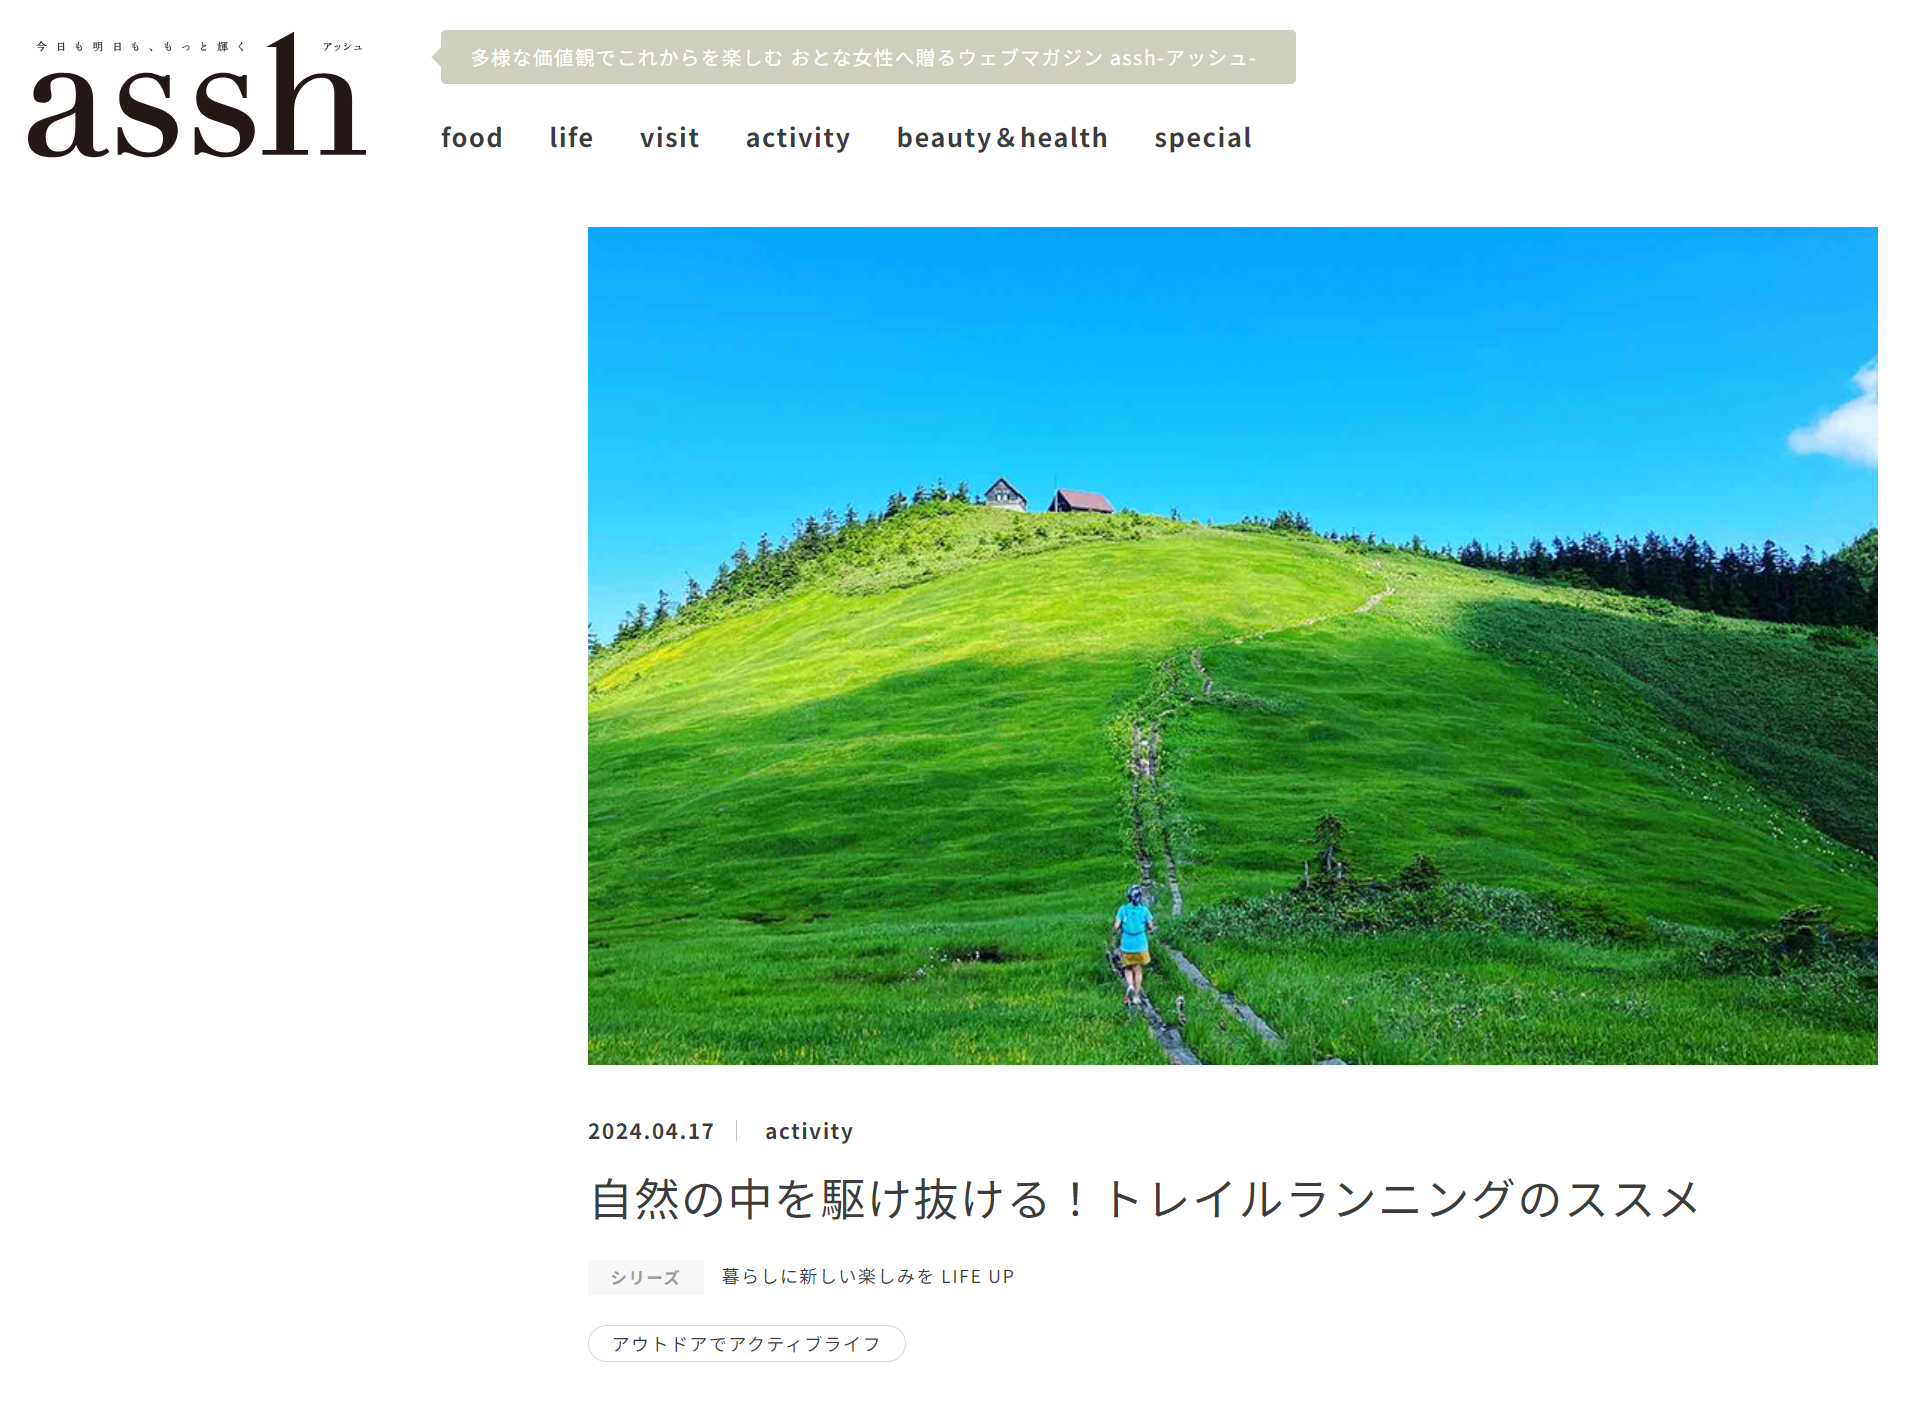 新潟日報 Web magazine asshでの連載がスタートしました